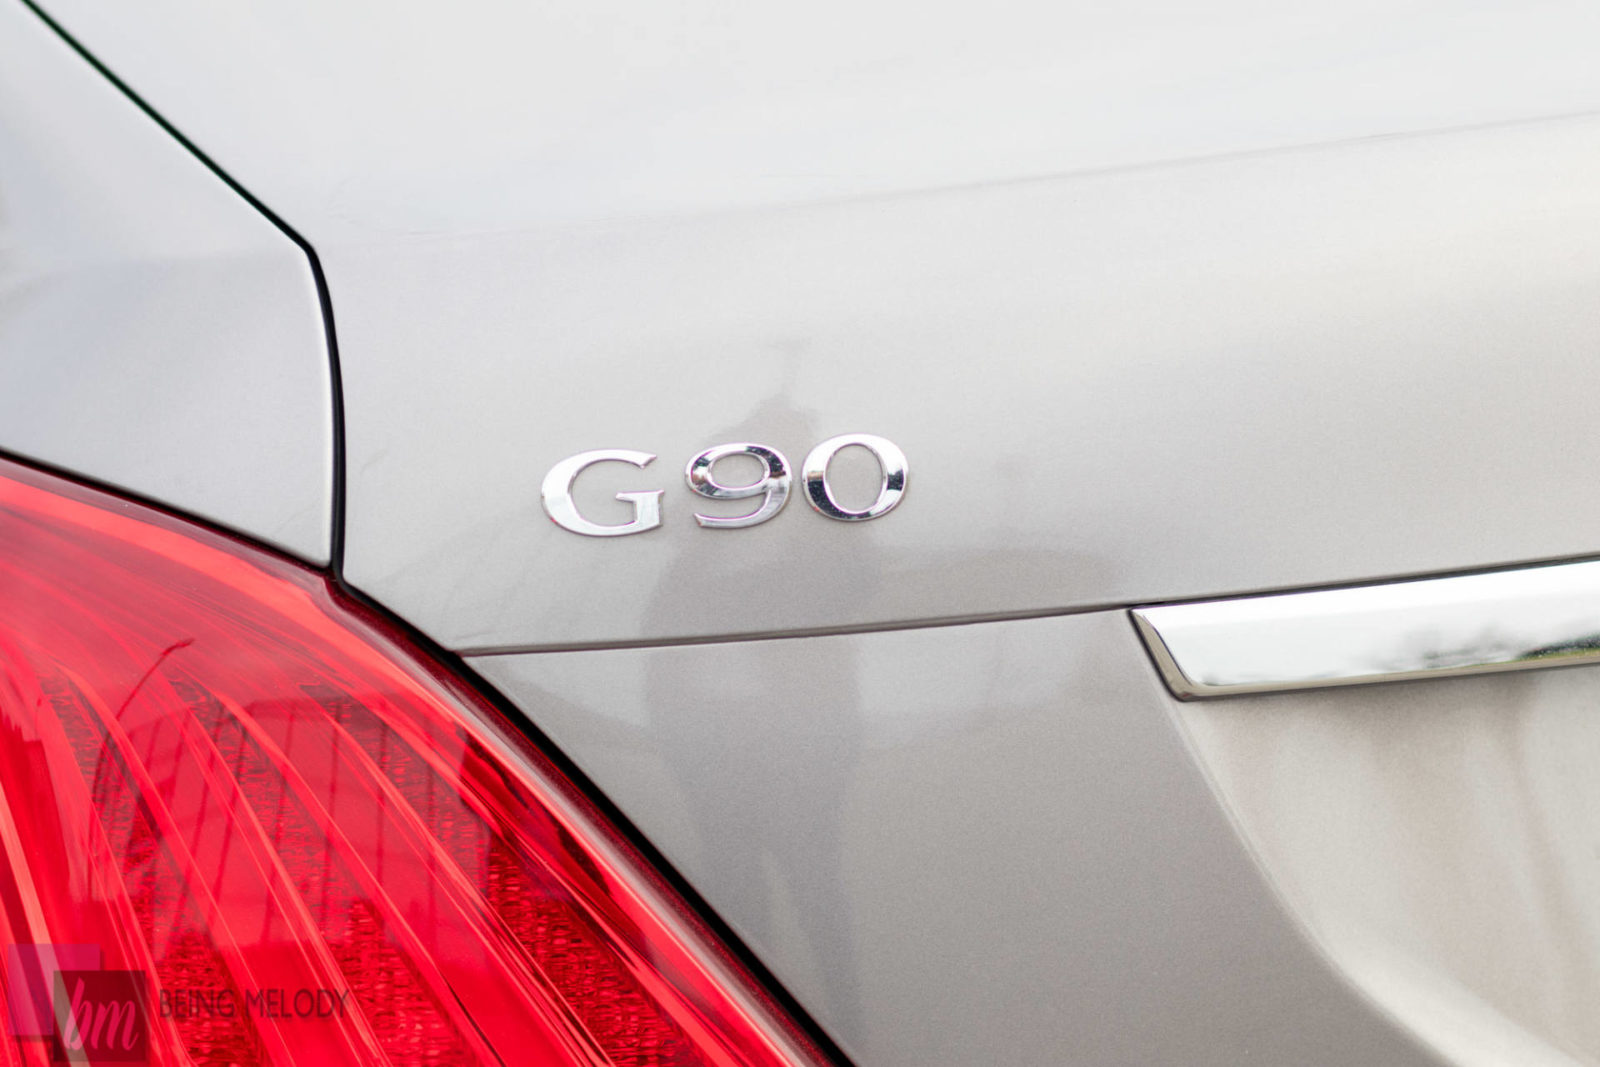 2018 Hyundai Genesis G90 Car Review